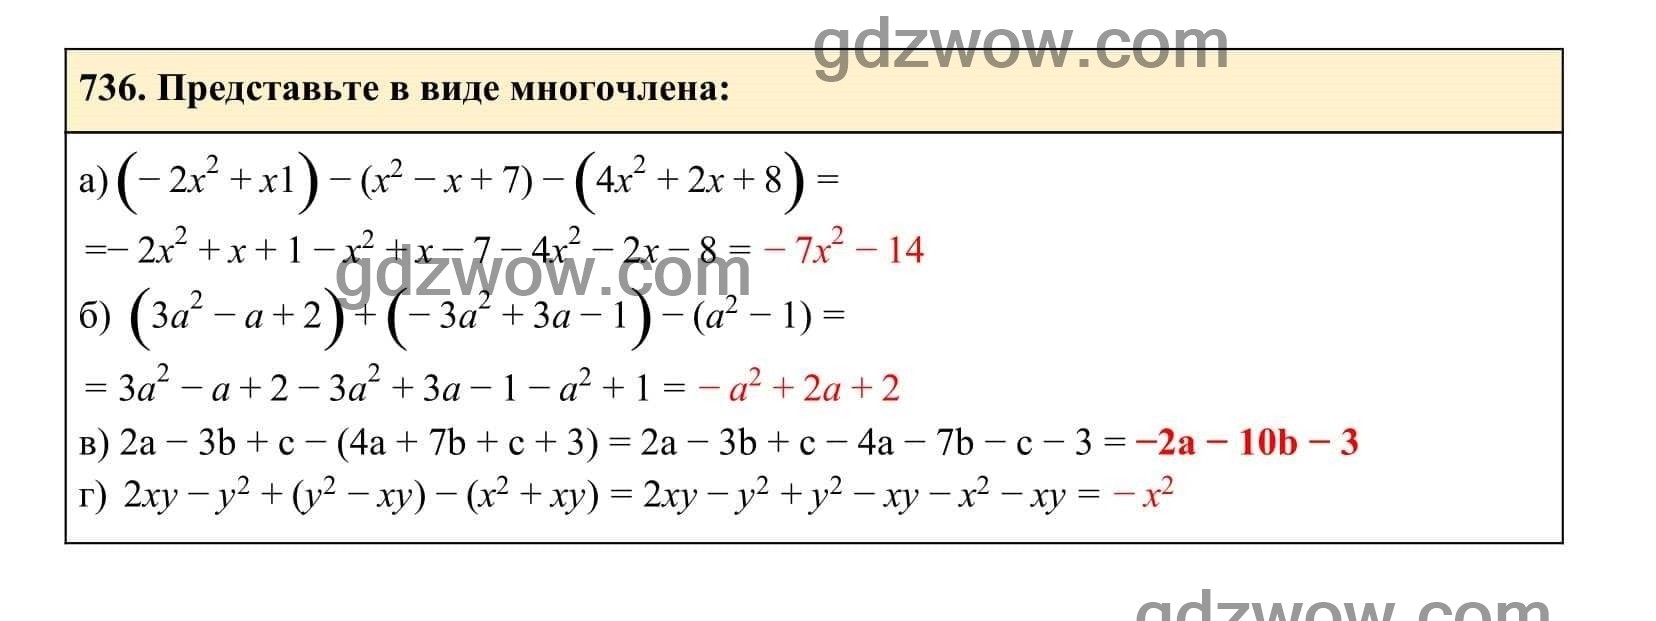 Упражнение 736 - ГДЗ по Алгебре 7 класс Учебник Макарычев (решебник) - GDZwow